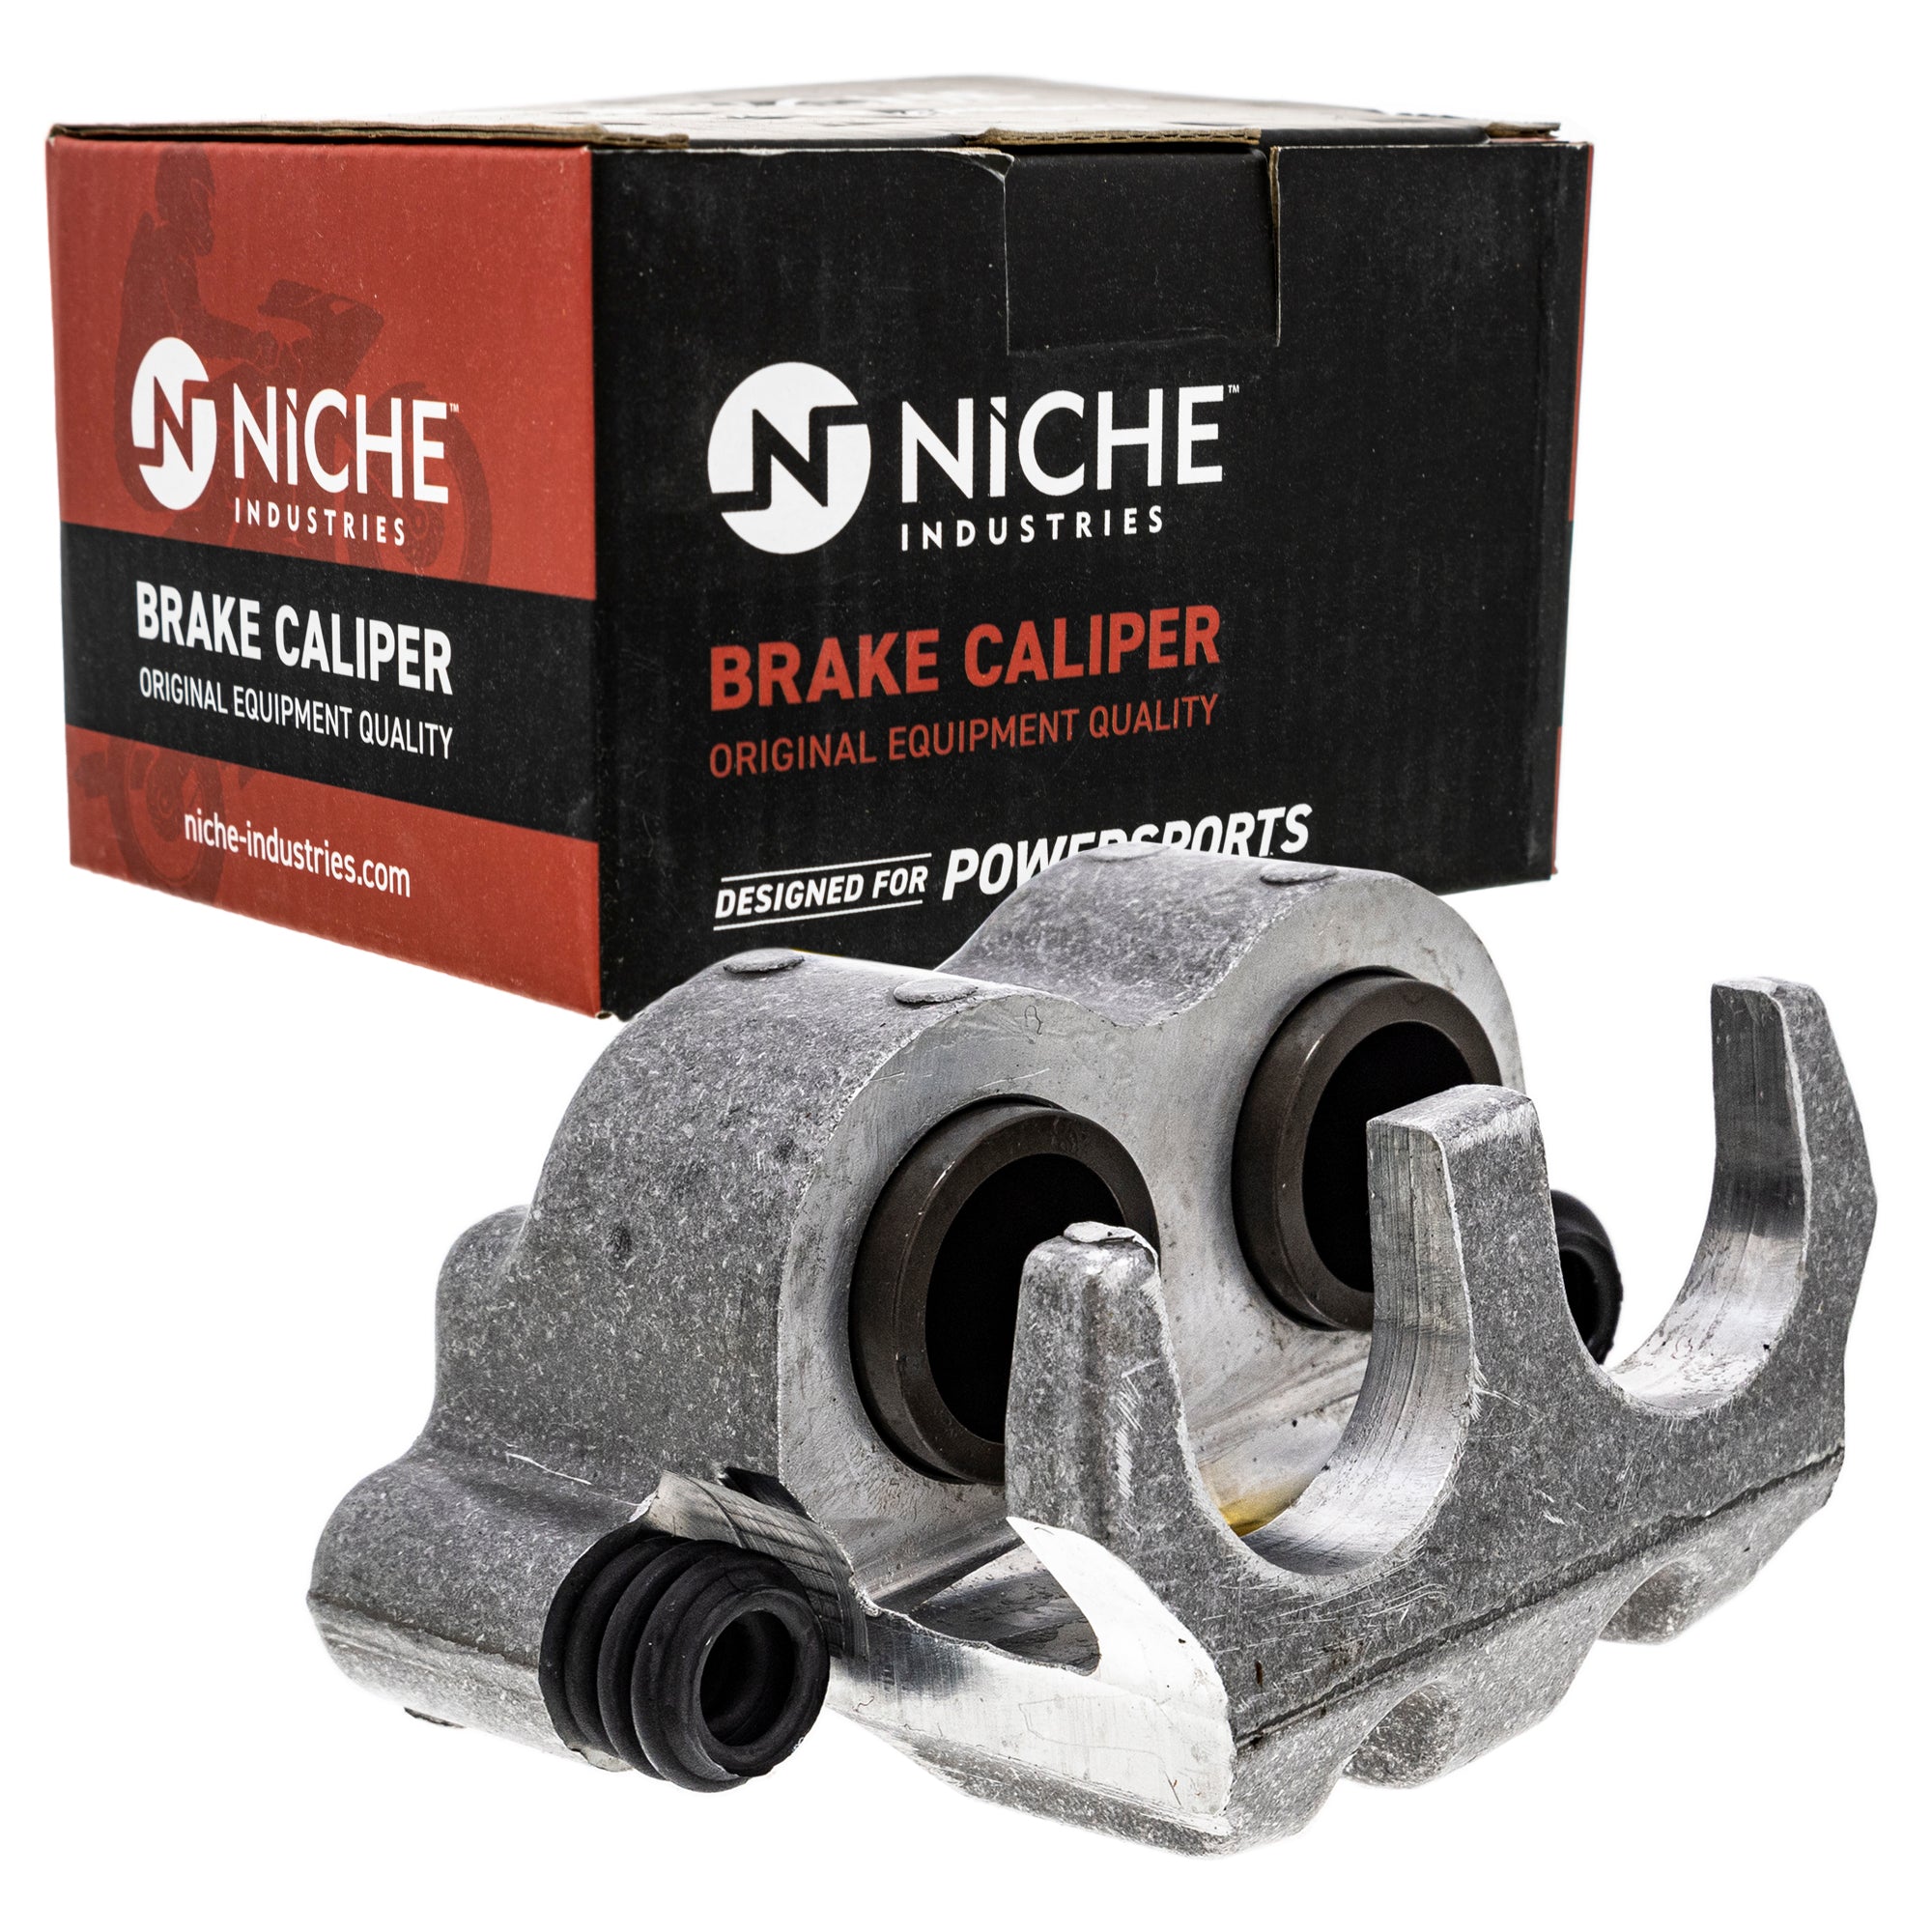 NICHE MK1001056 Brake Caliper Kit